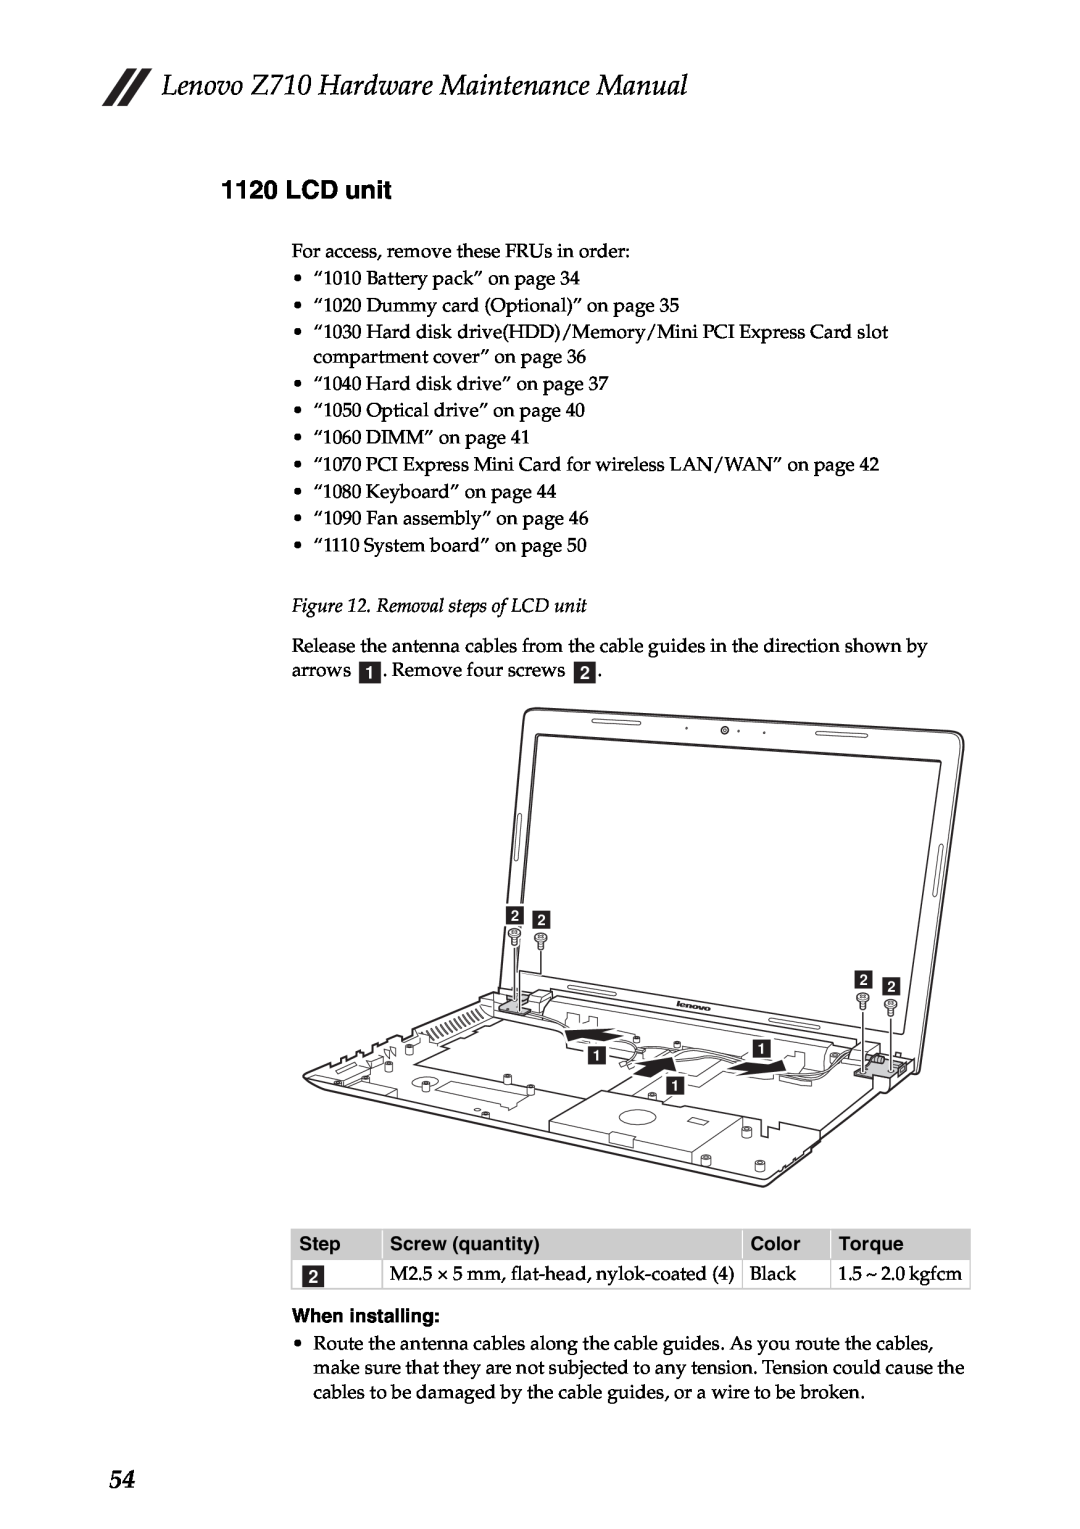 Lenovo manual Removal steps of LCD unit, Lenovo Z710 Hardware Maintenance Manual 